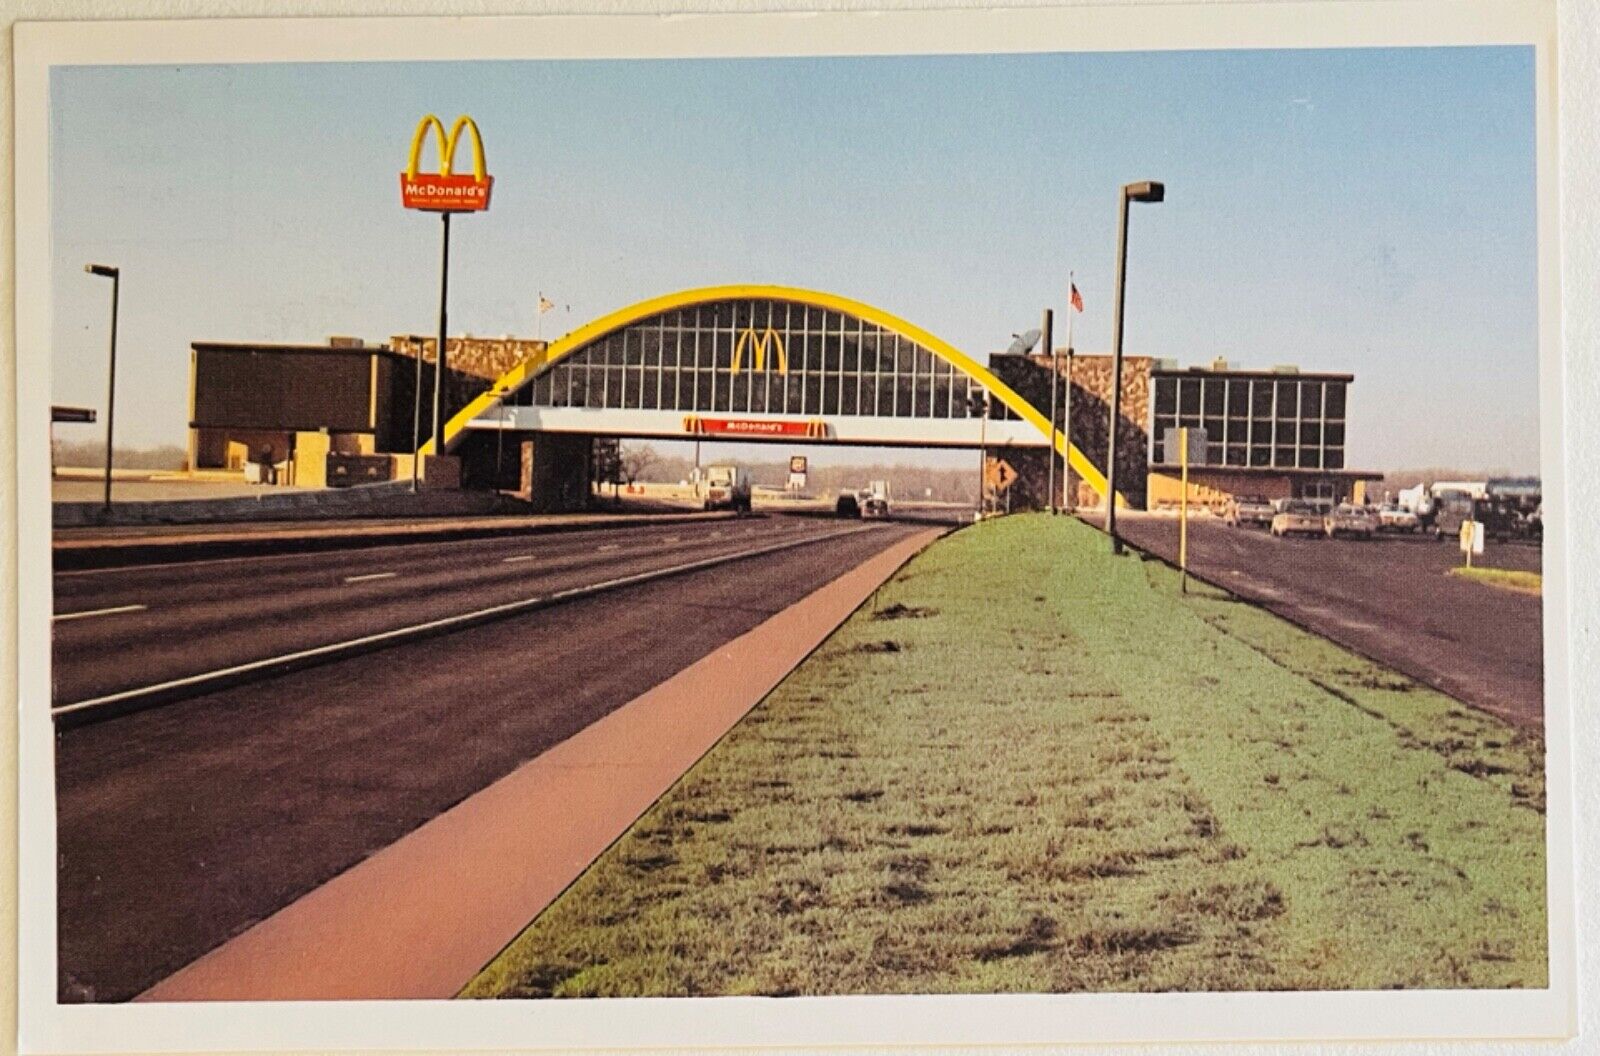 Vinita Oklahoma Worlds Largest McDonalds Turnpike Vintage 6x4 Postcard c1990